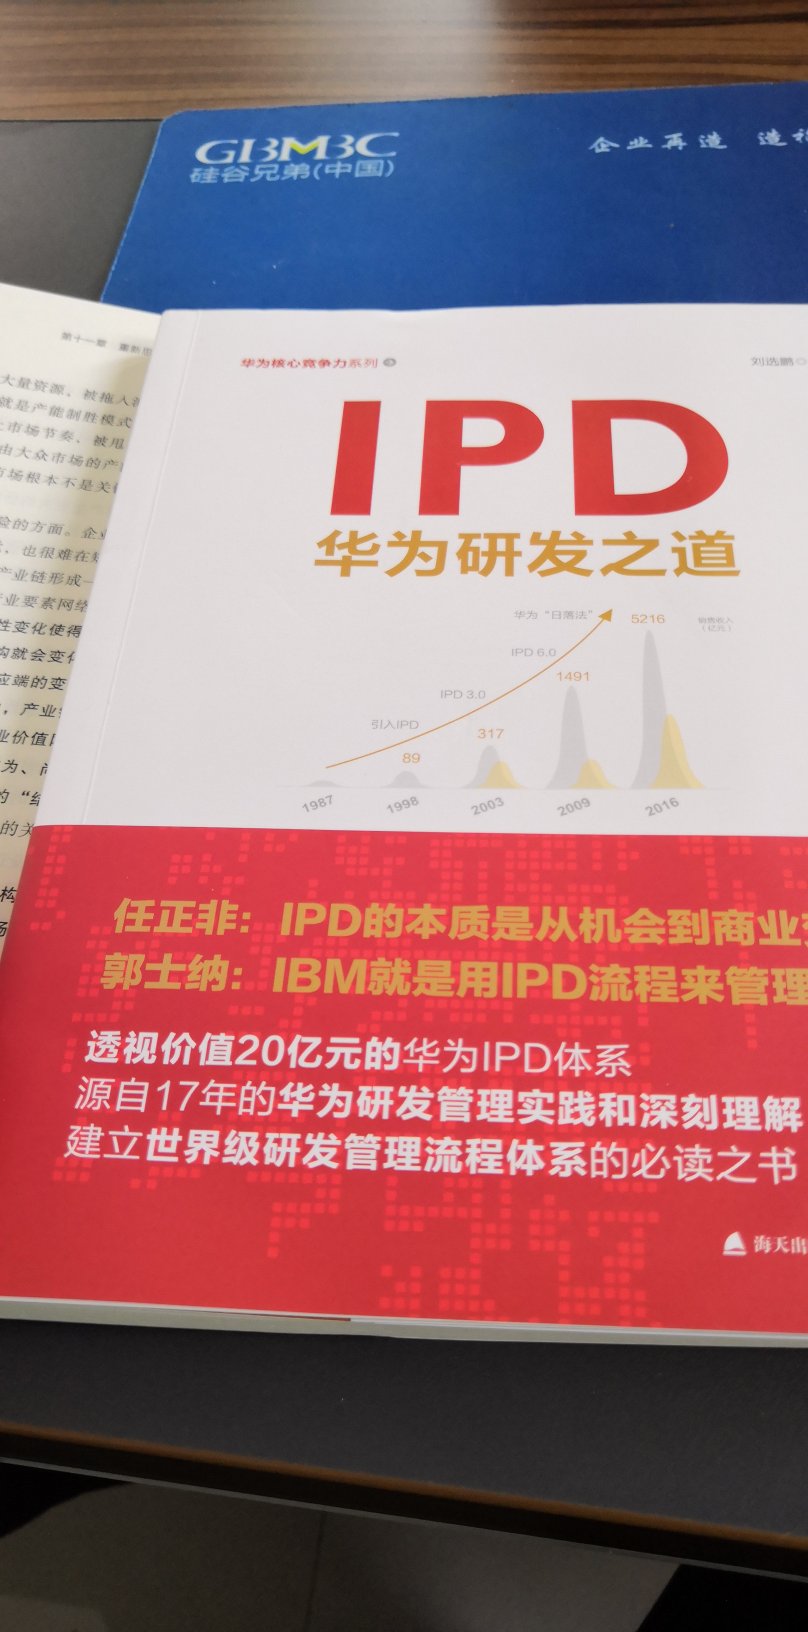 想通过本书了解华为从IBM引入的IPD流程